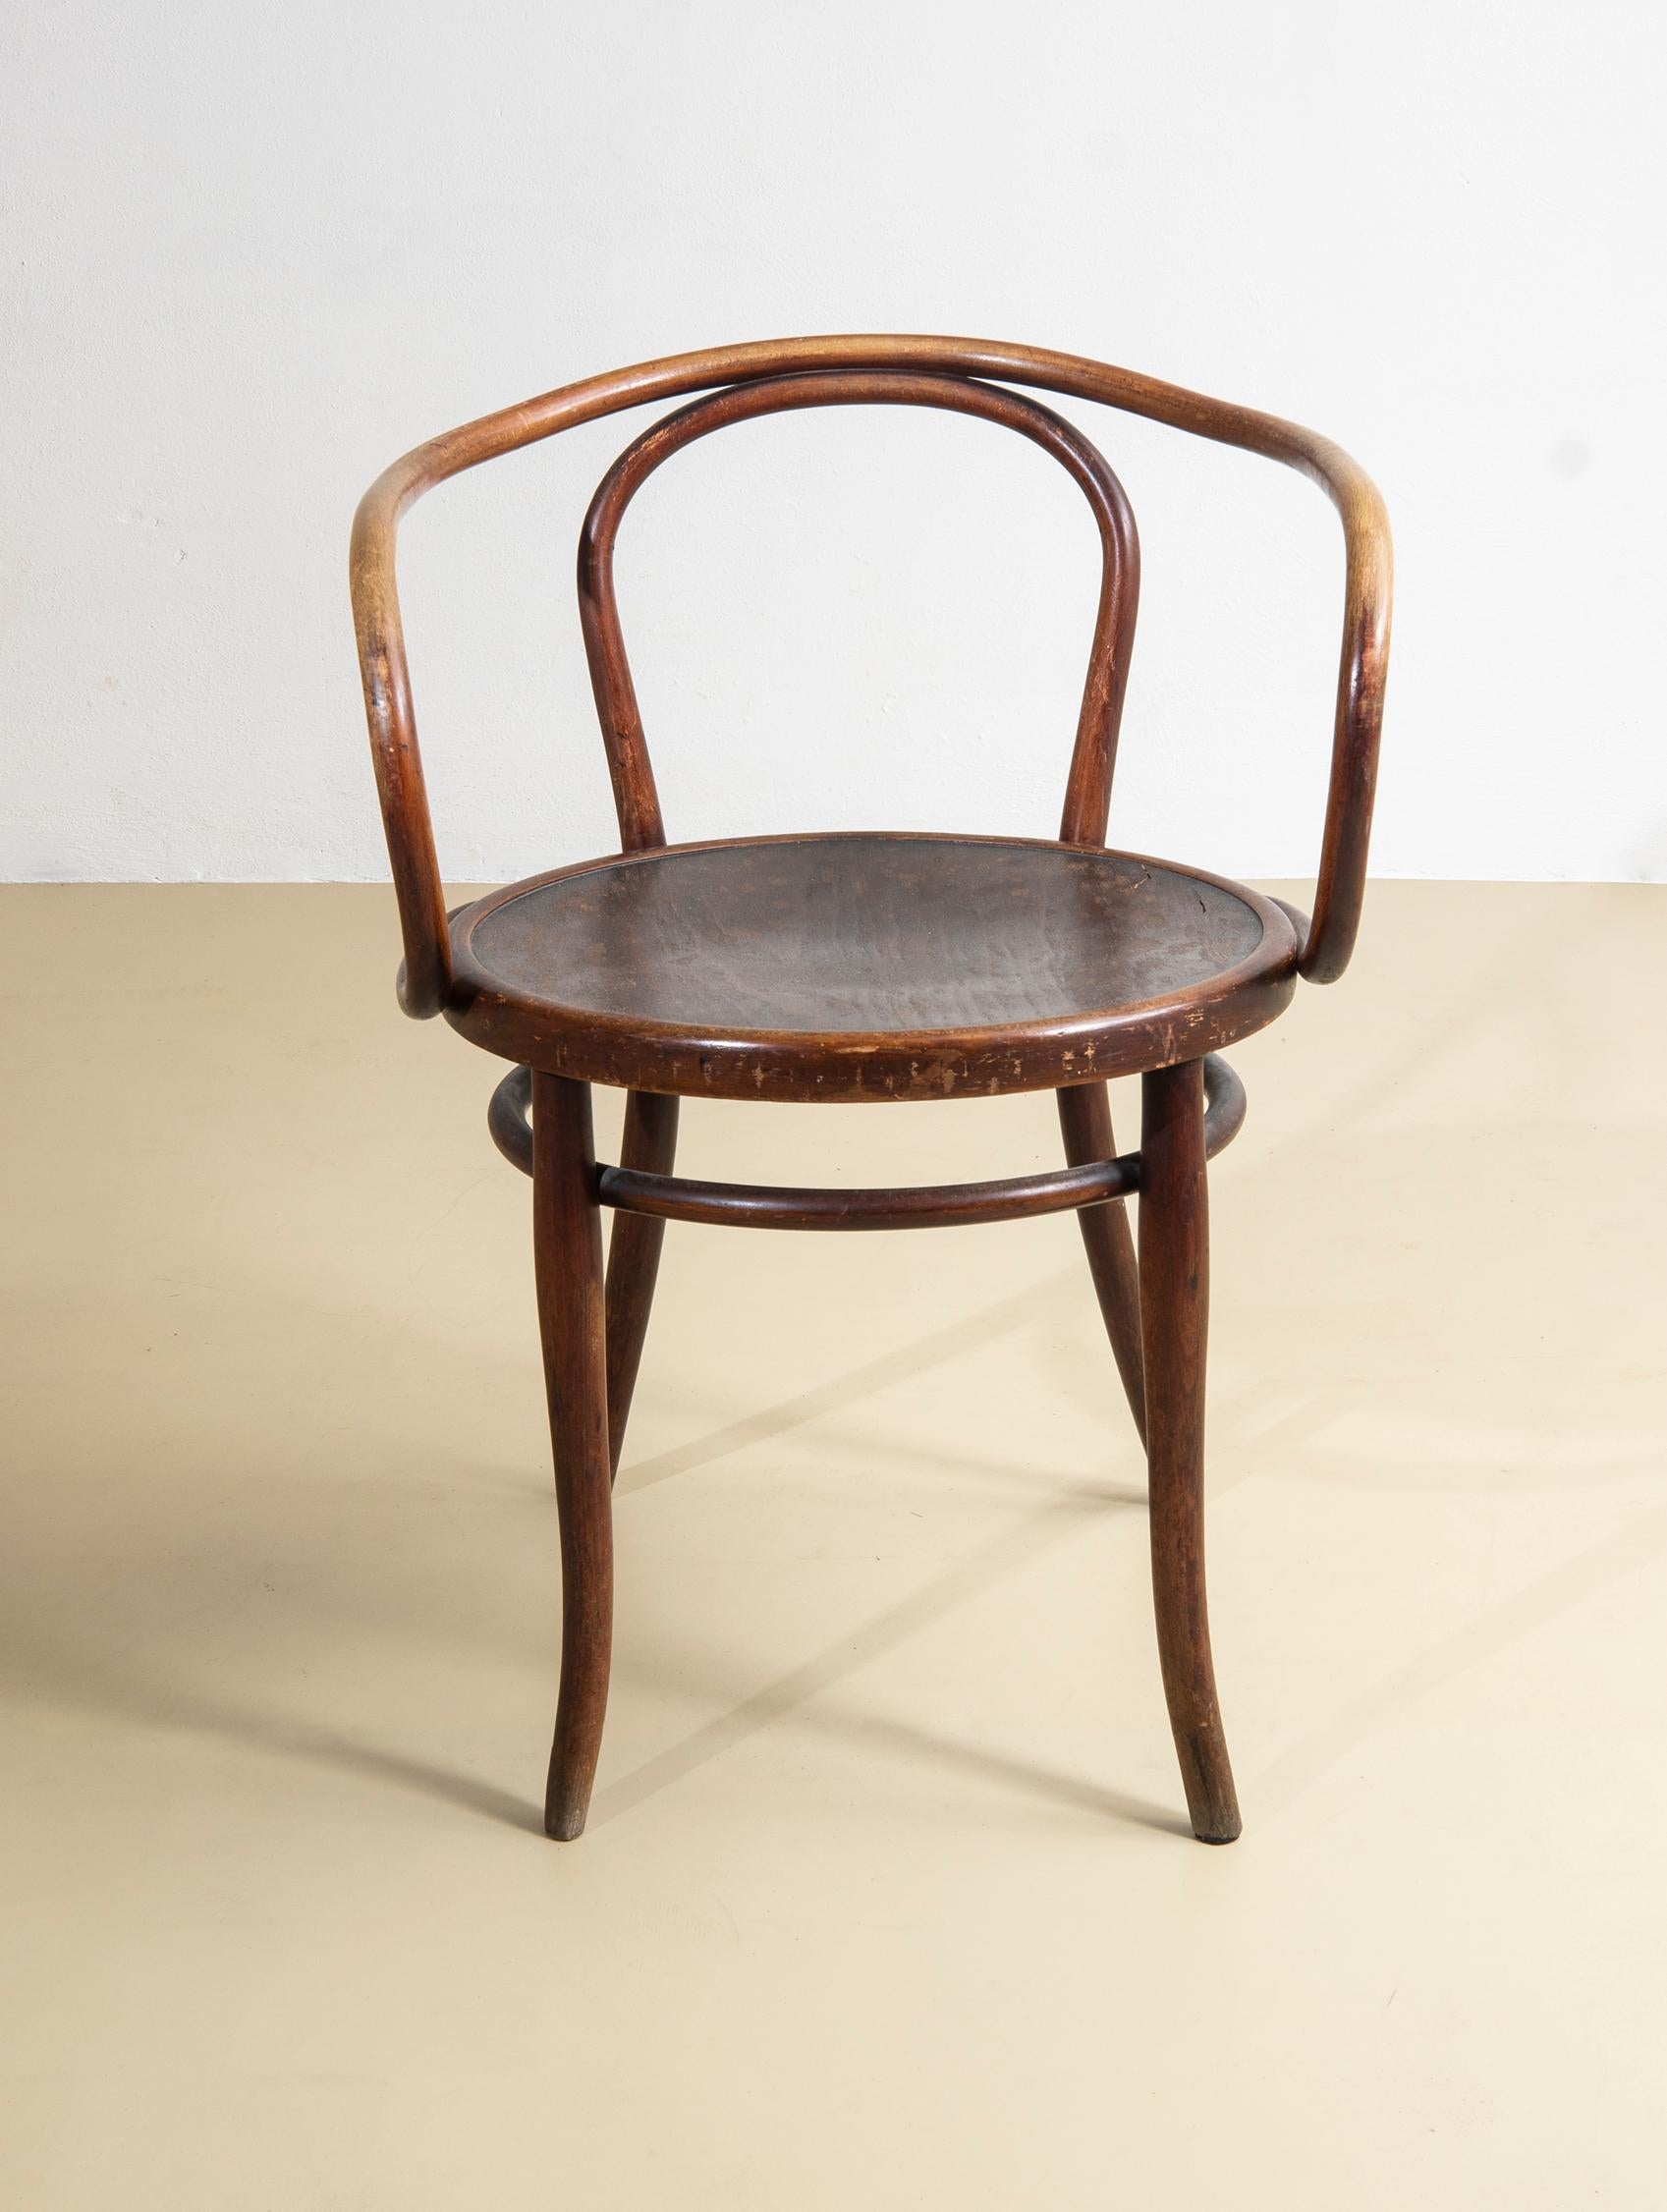 Gebrüder Thonet, Sedia  6009, successivamente B9 detta anche  'sedia Corbusier', 1904 circa. Legno di faggio, legno di faggio curvato, compensato, tinto scuro. Questa sedia divenne famosa quando Le Cobusier la utilizzò per il suo 